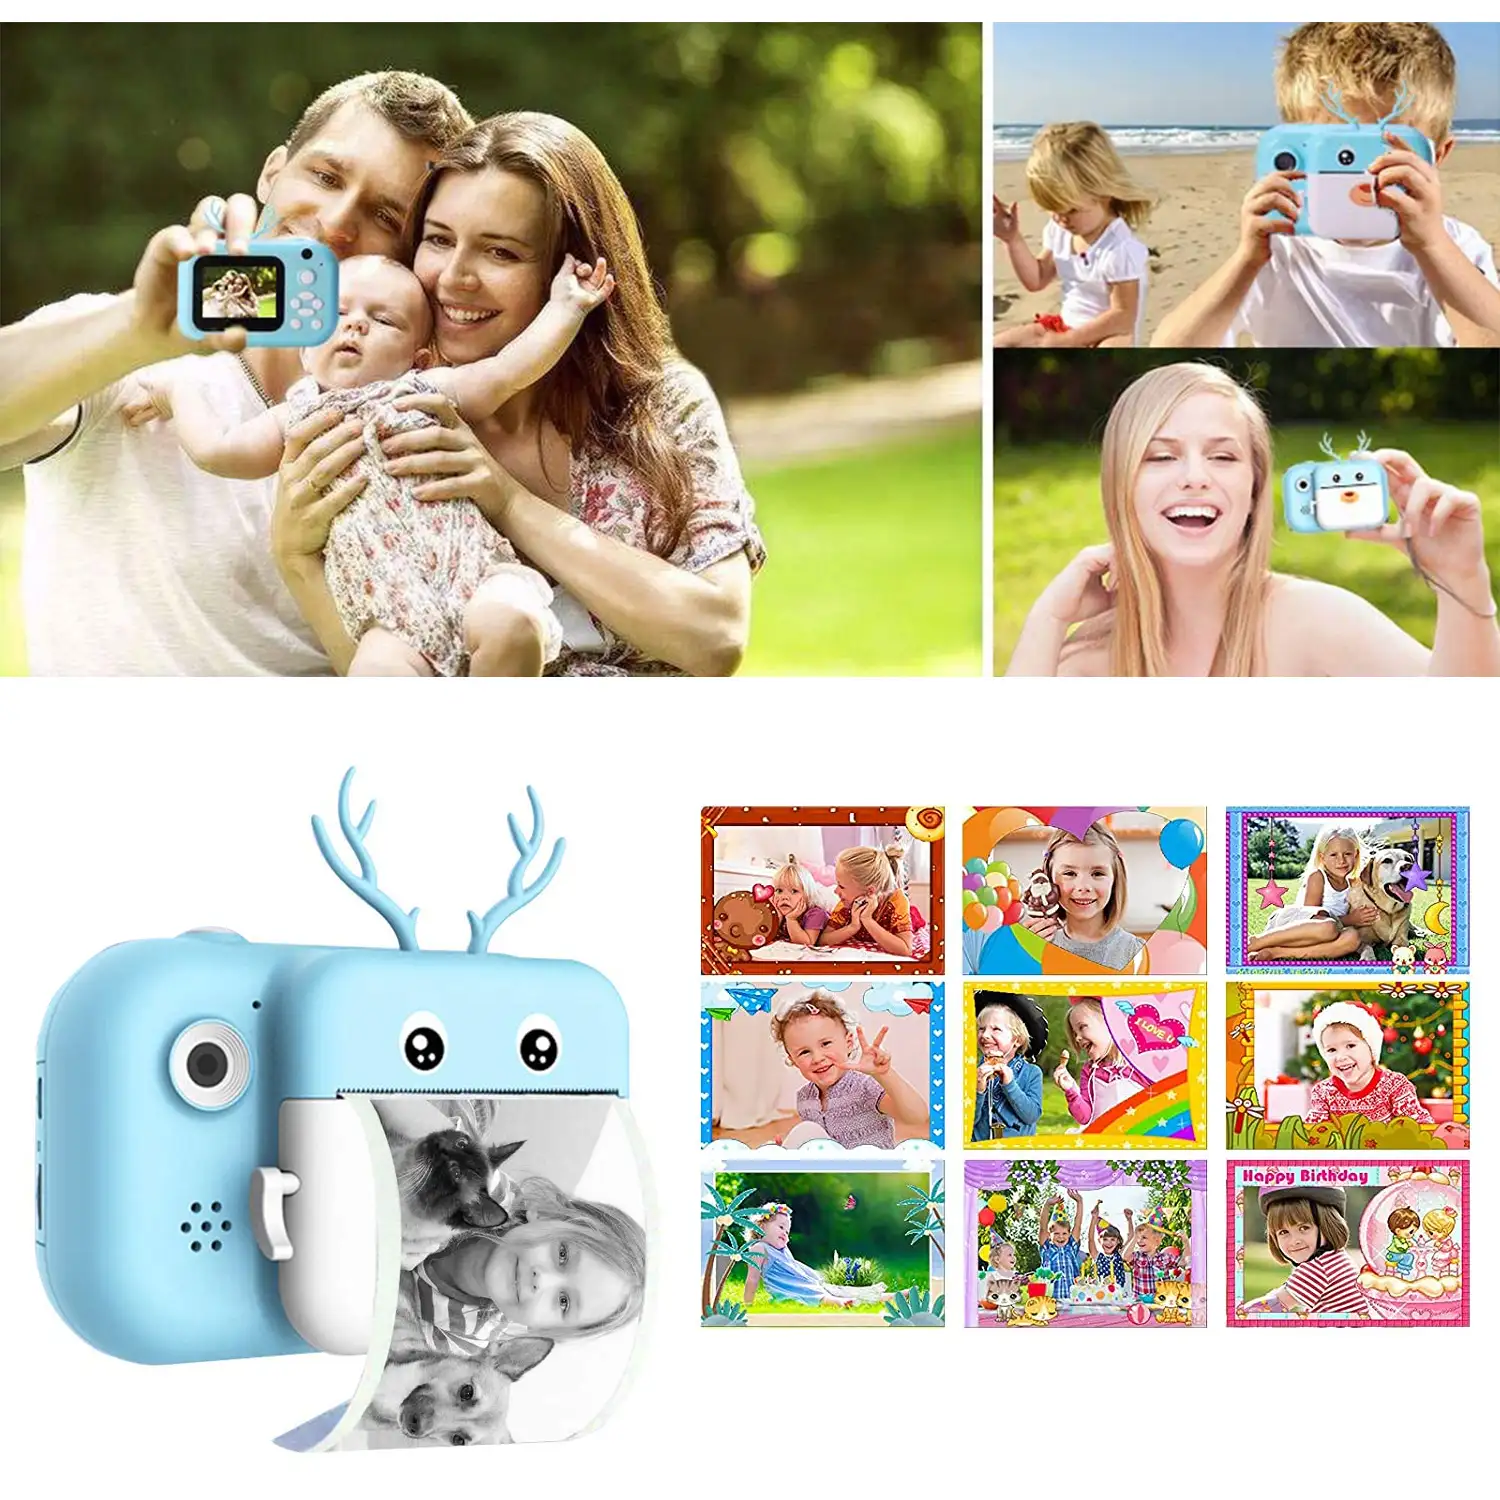 Cámara Ciervo digital de fotos 40mpx y video 2,5K para niños. Impresión instantánea de tus fotos preferidas. Doble cámara, para selfies.